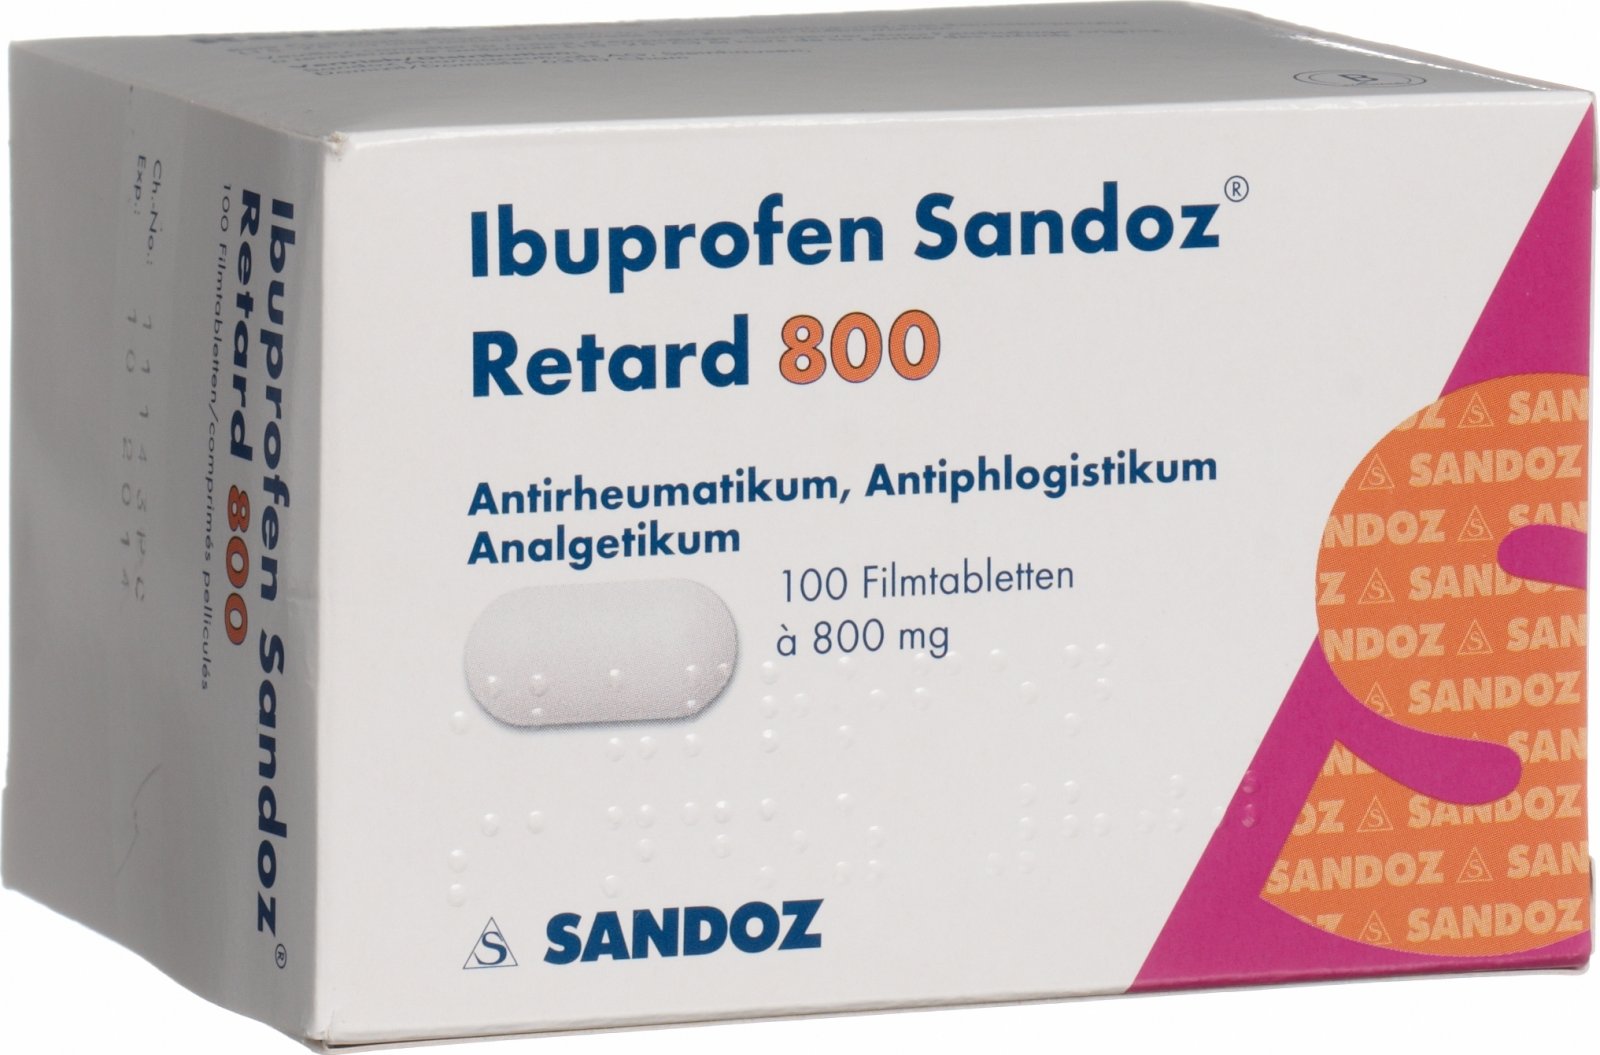 Ibuprofen Sandoz Retard Filmtabletten 800mg 100 Stück in der Adler Apotheke